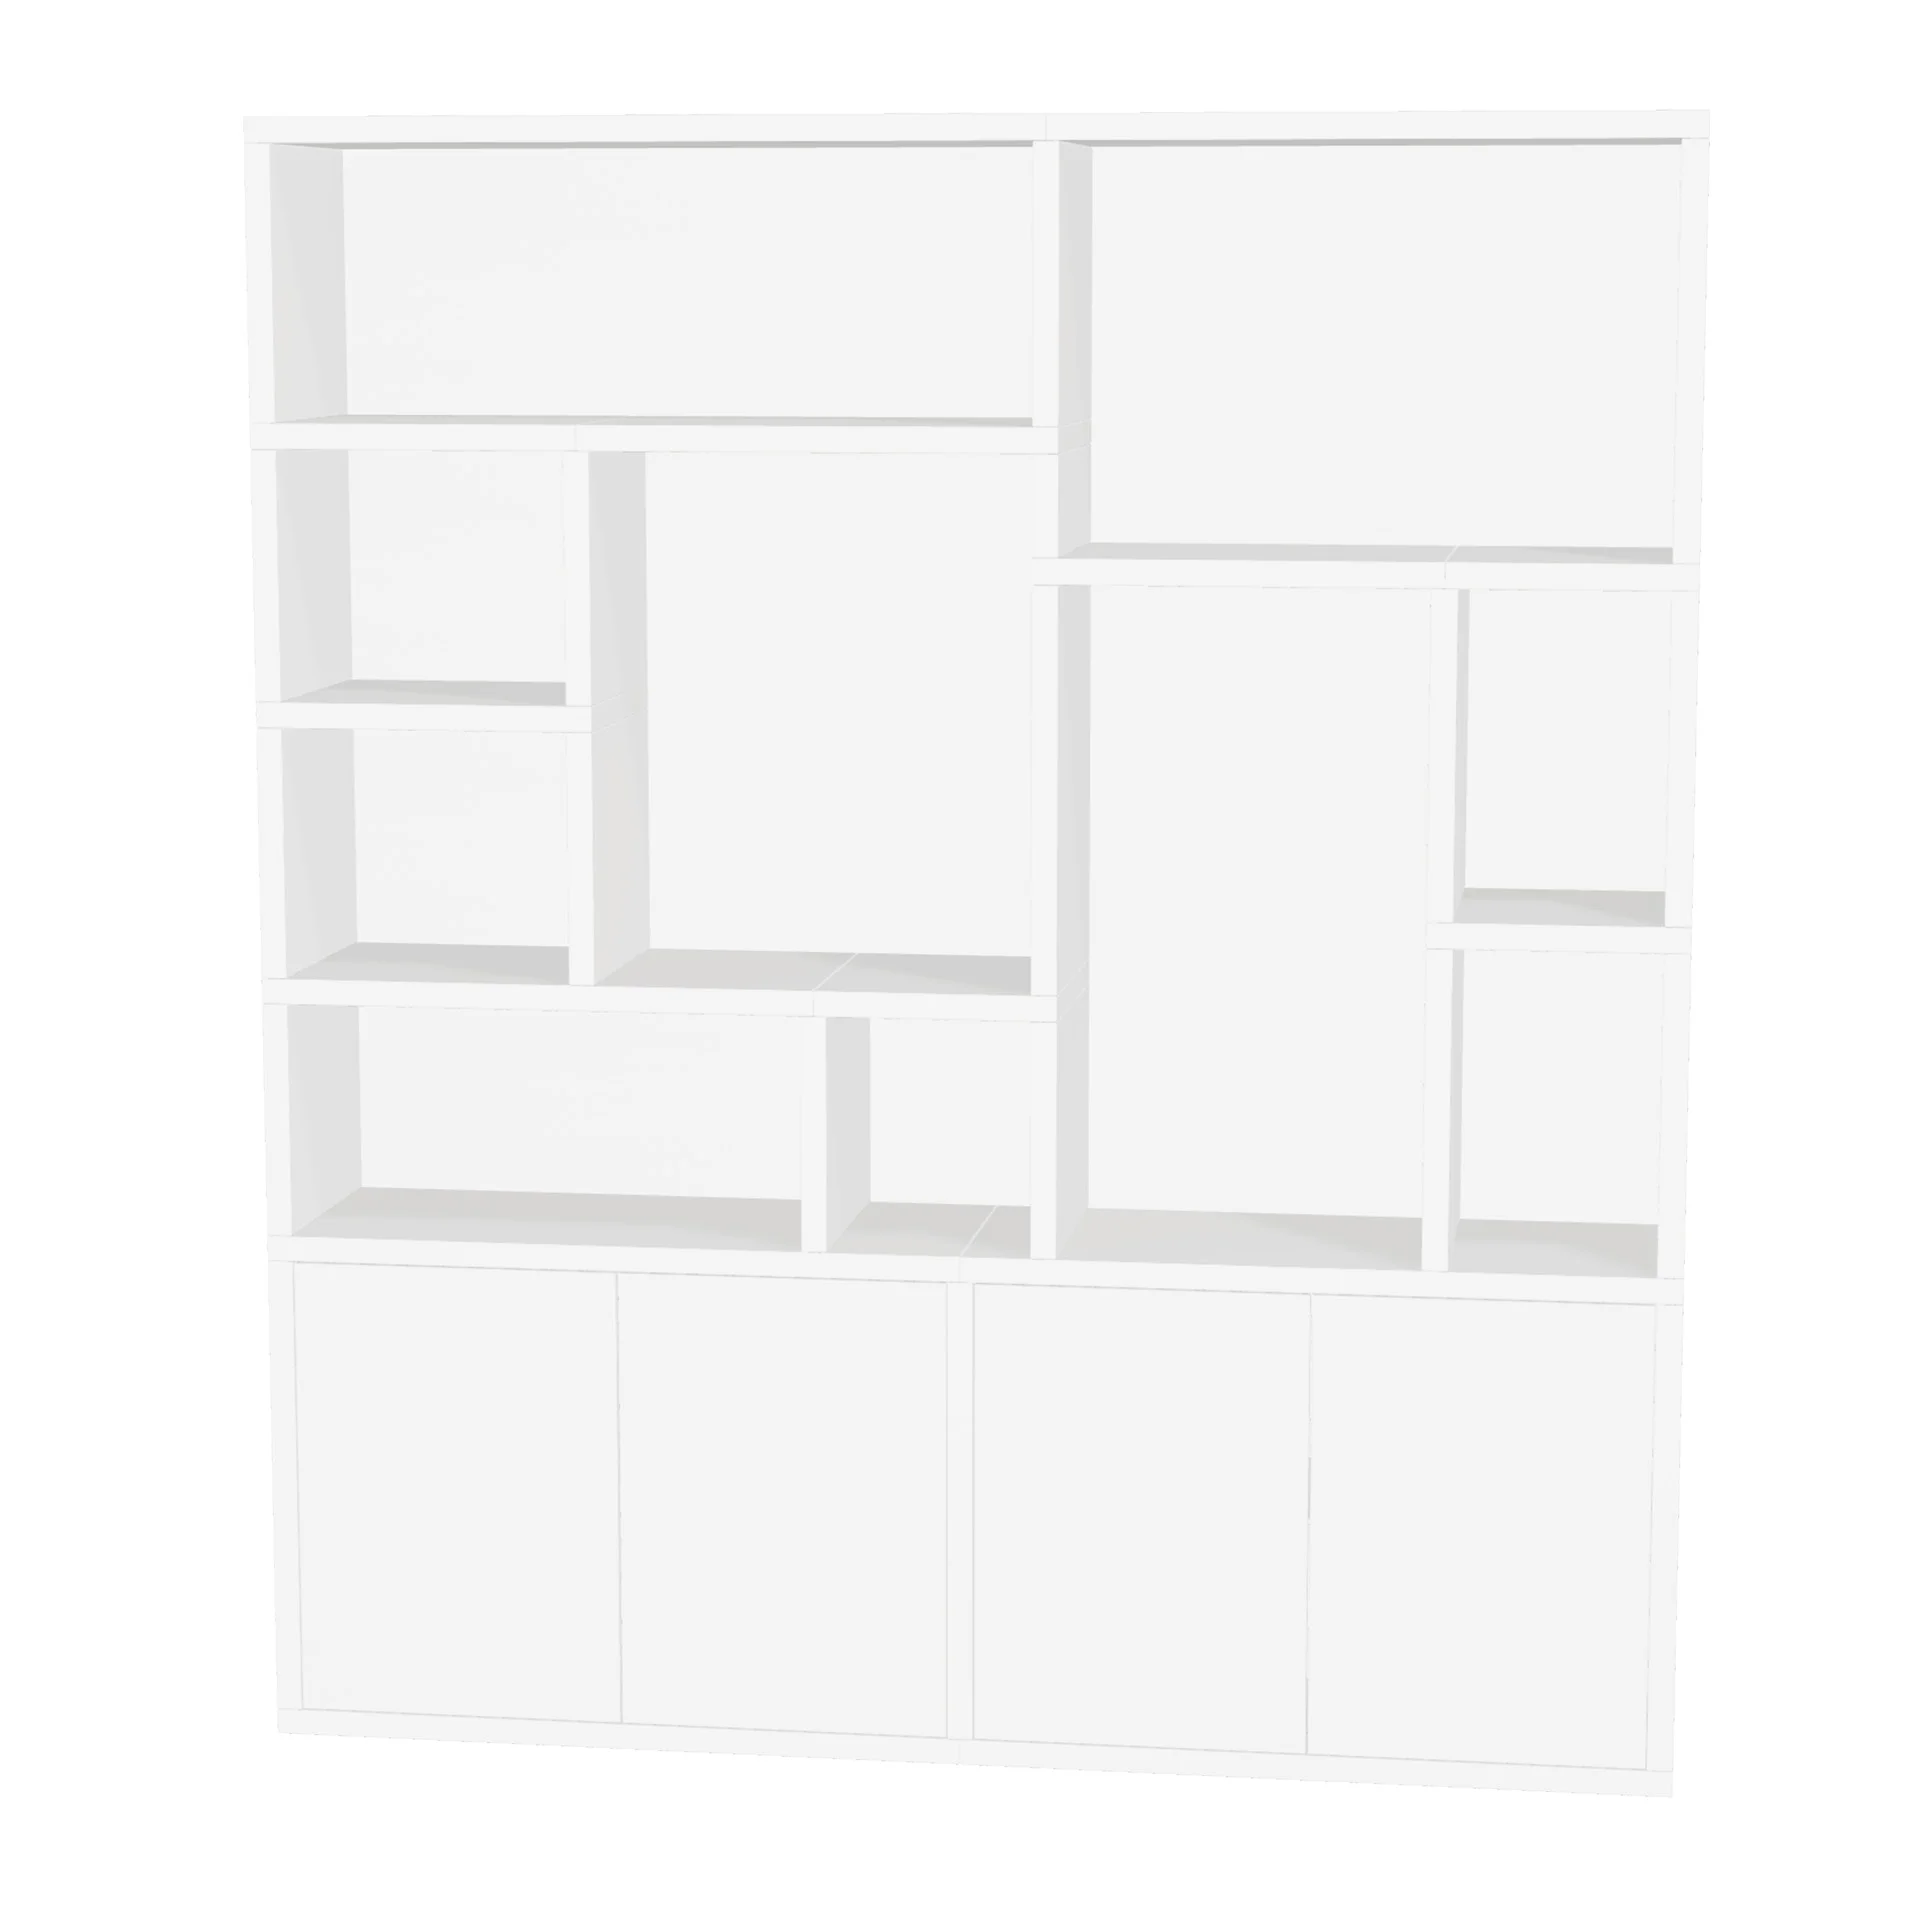 TSFC003 en panel de muebles blanco